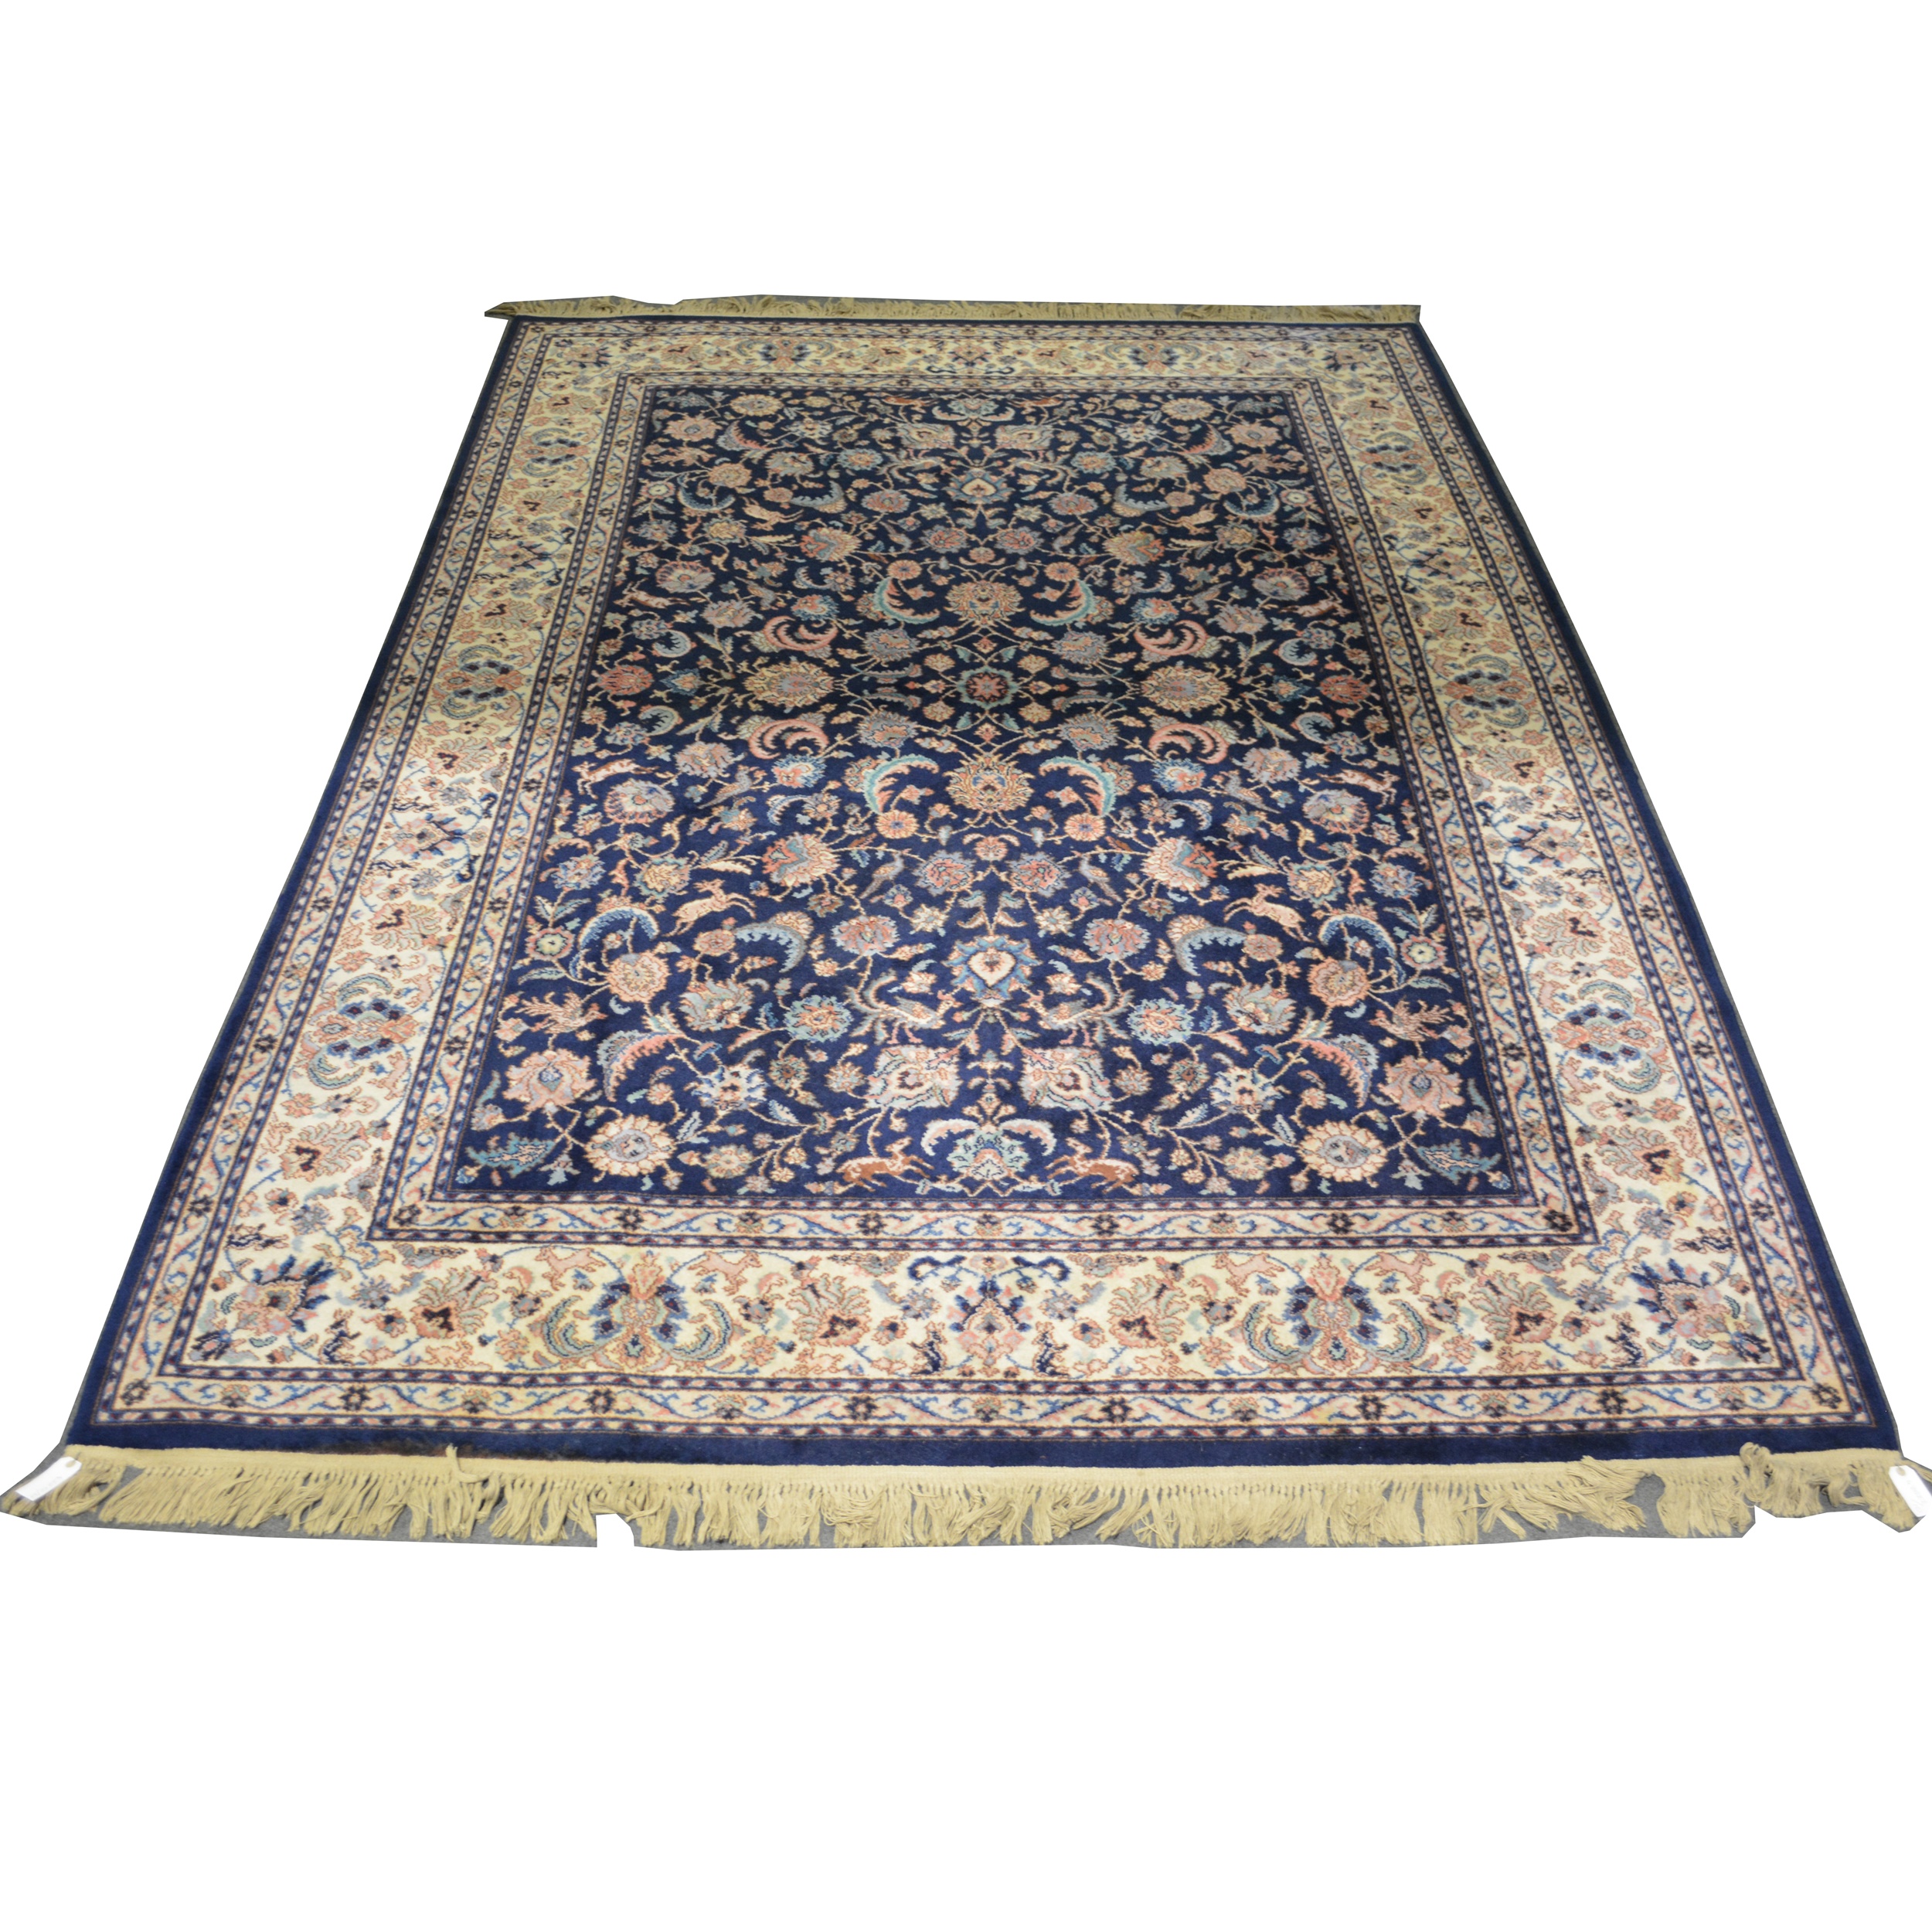 Zeigler pattern carpet, blue ground,